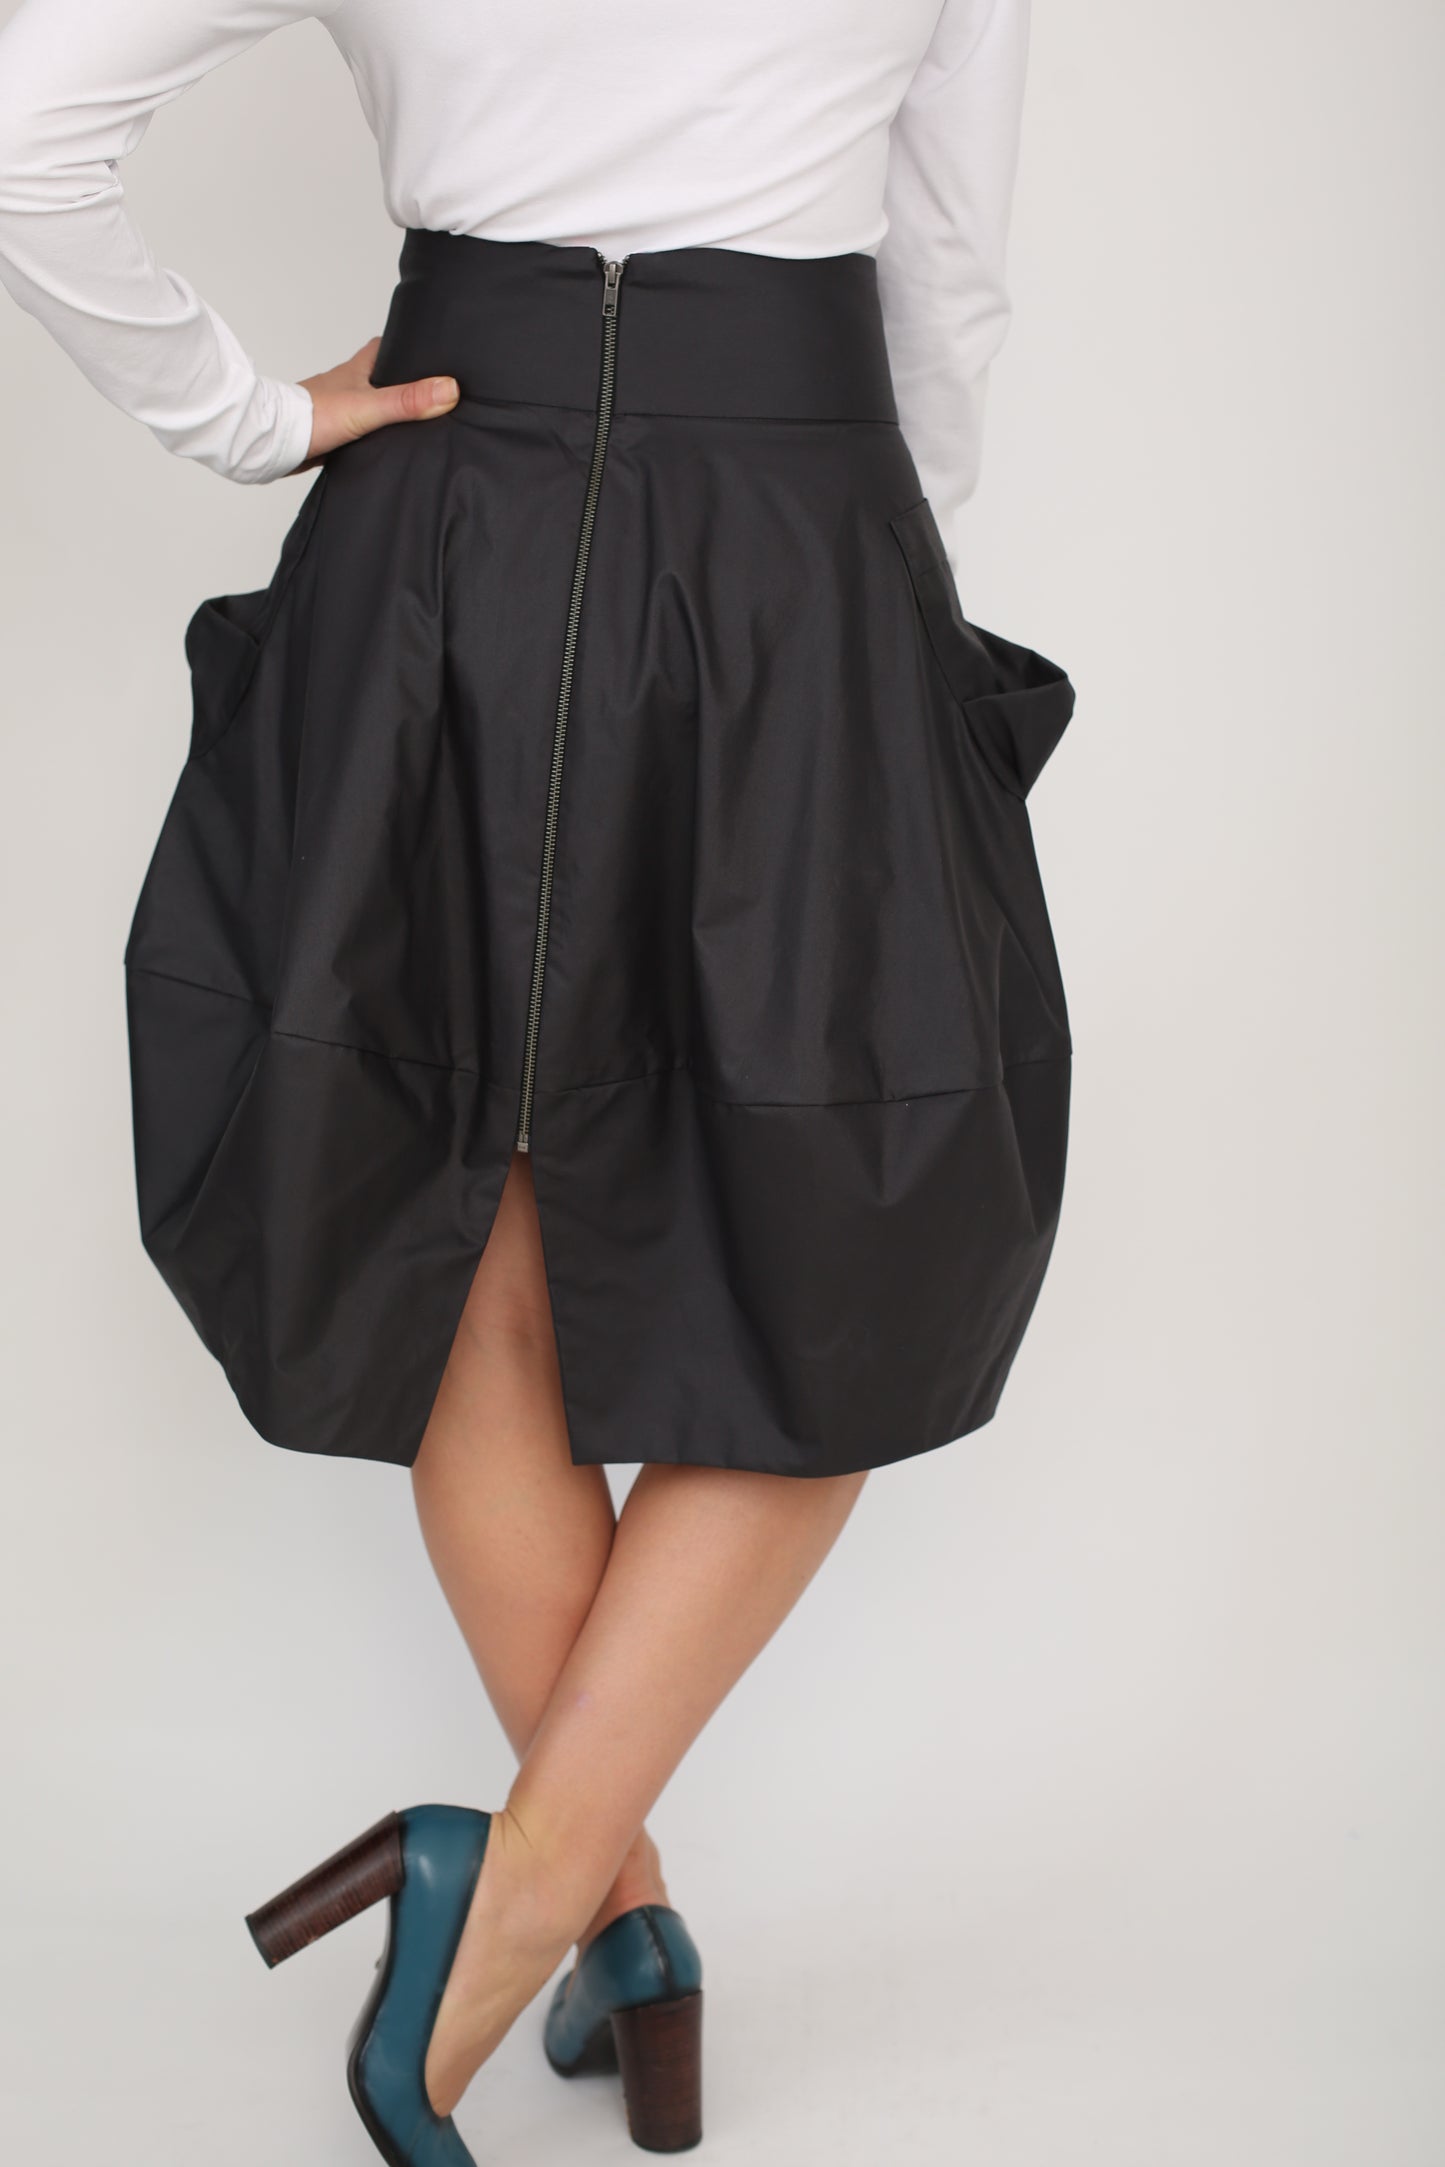 Rain proof skirt ,Bubble skirt ,Waterproof skirt ,Skirt with pockets ,Boho style skirt